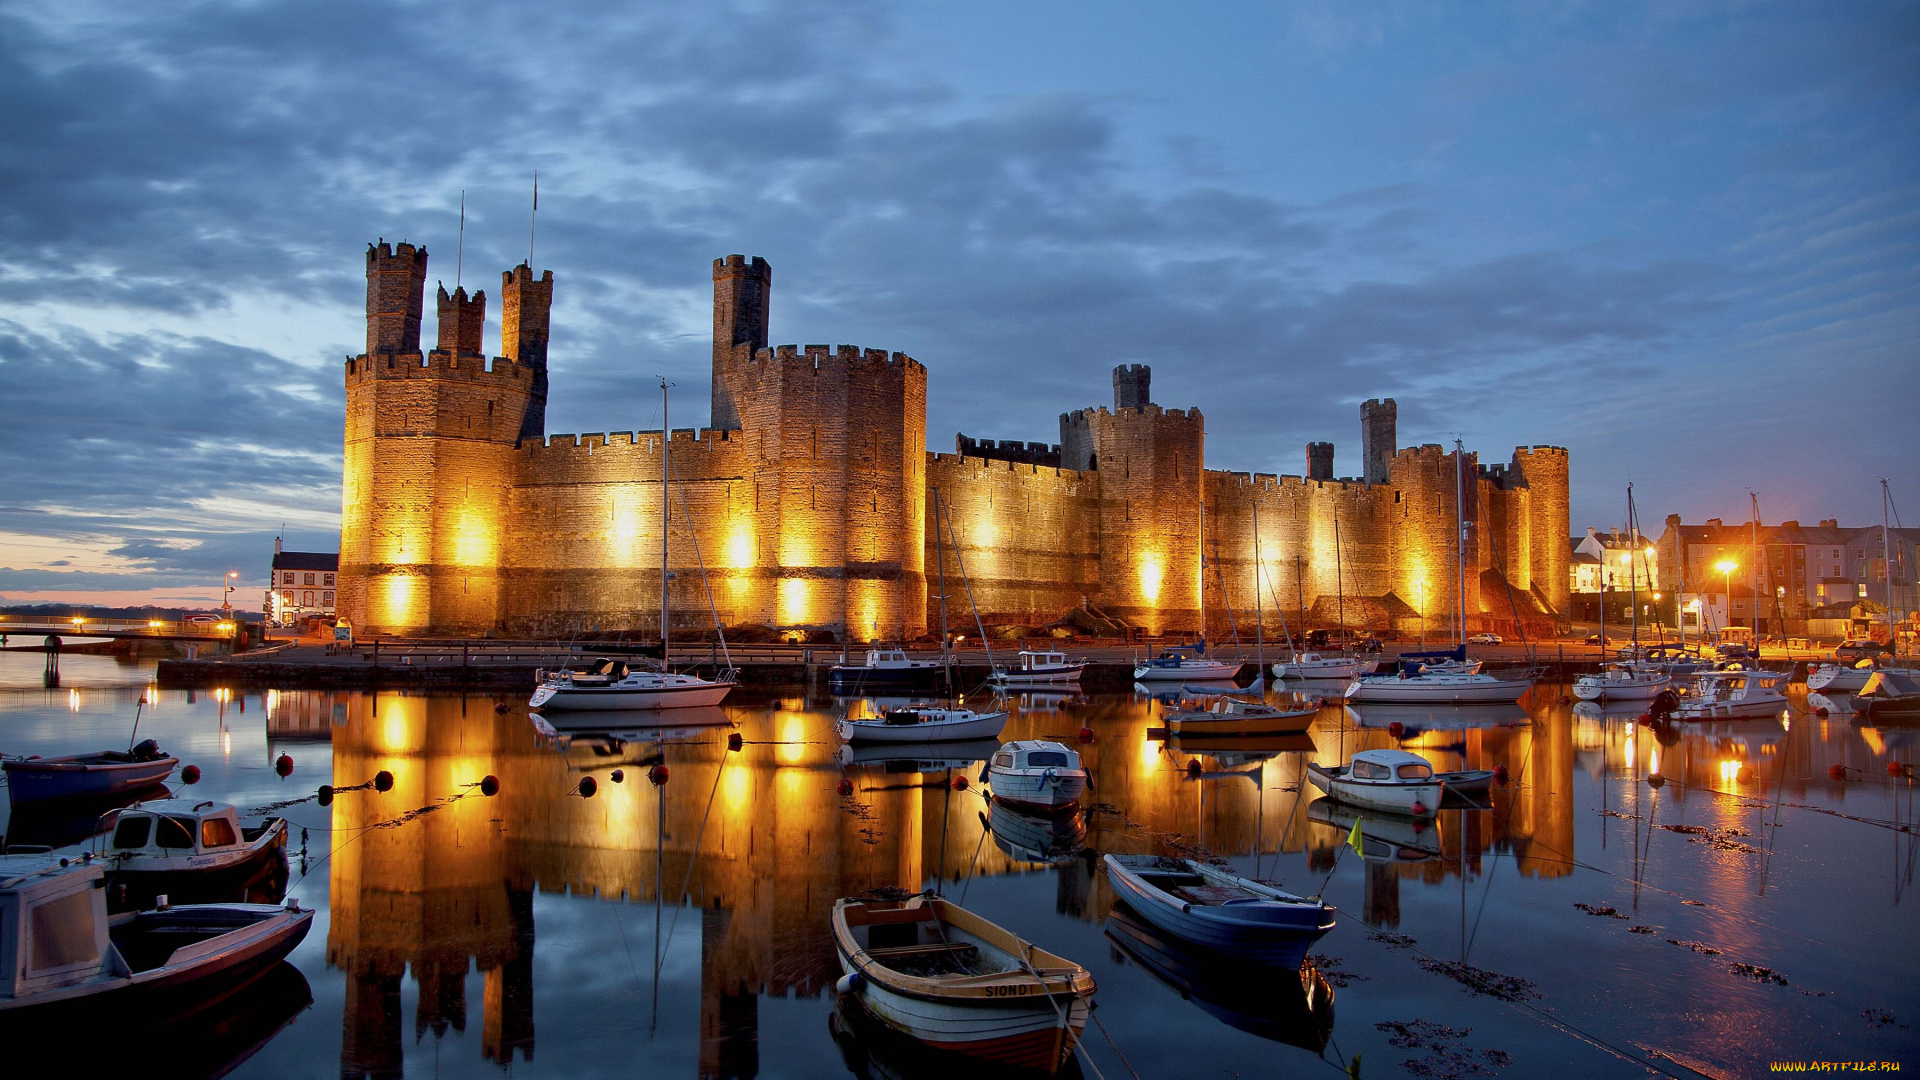 caernarfon, castle, england, города, дворцы, замки, крепости, замок, карнарвон, англия, бухта, лодки, яхты, отражение